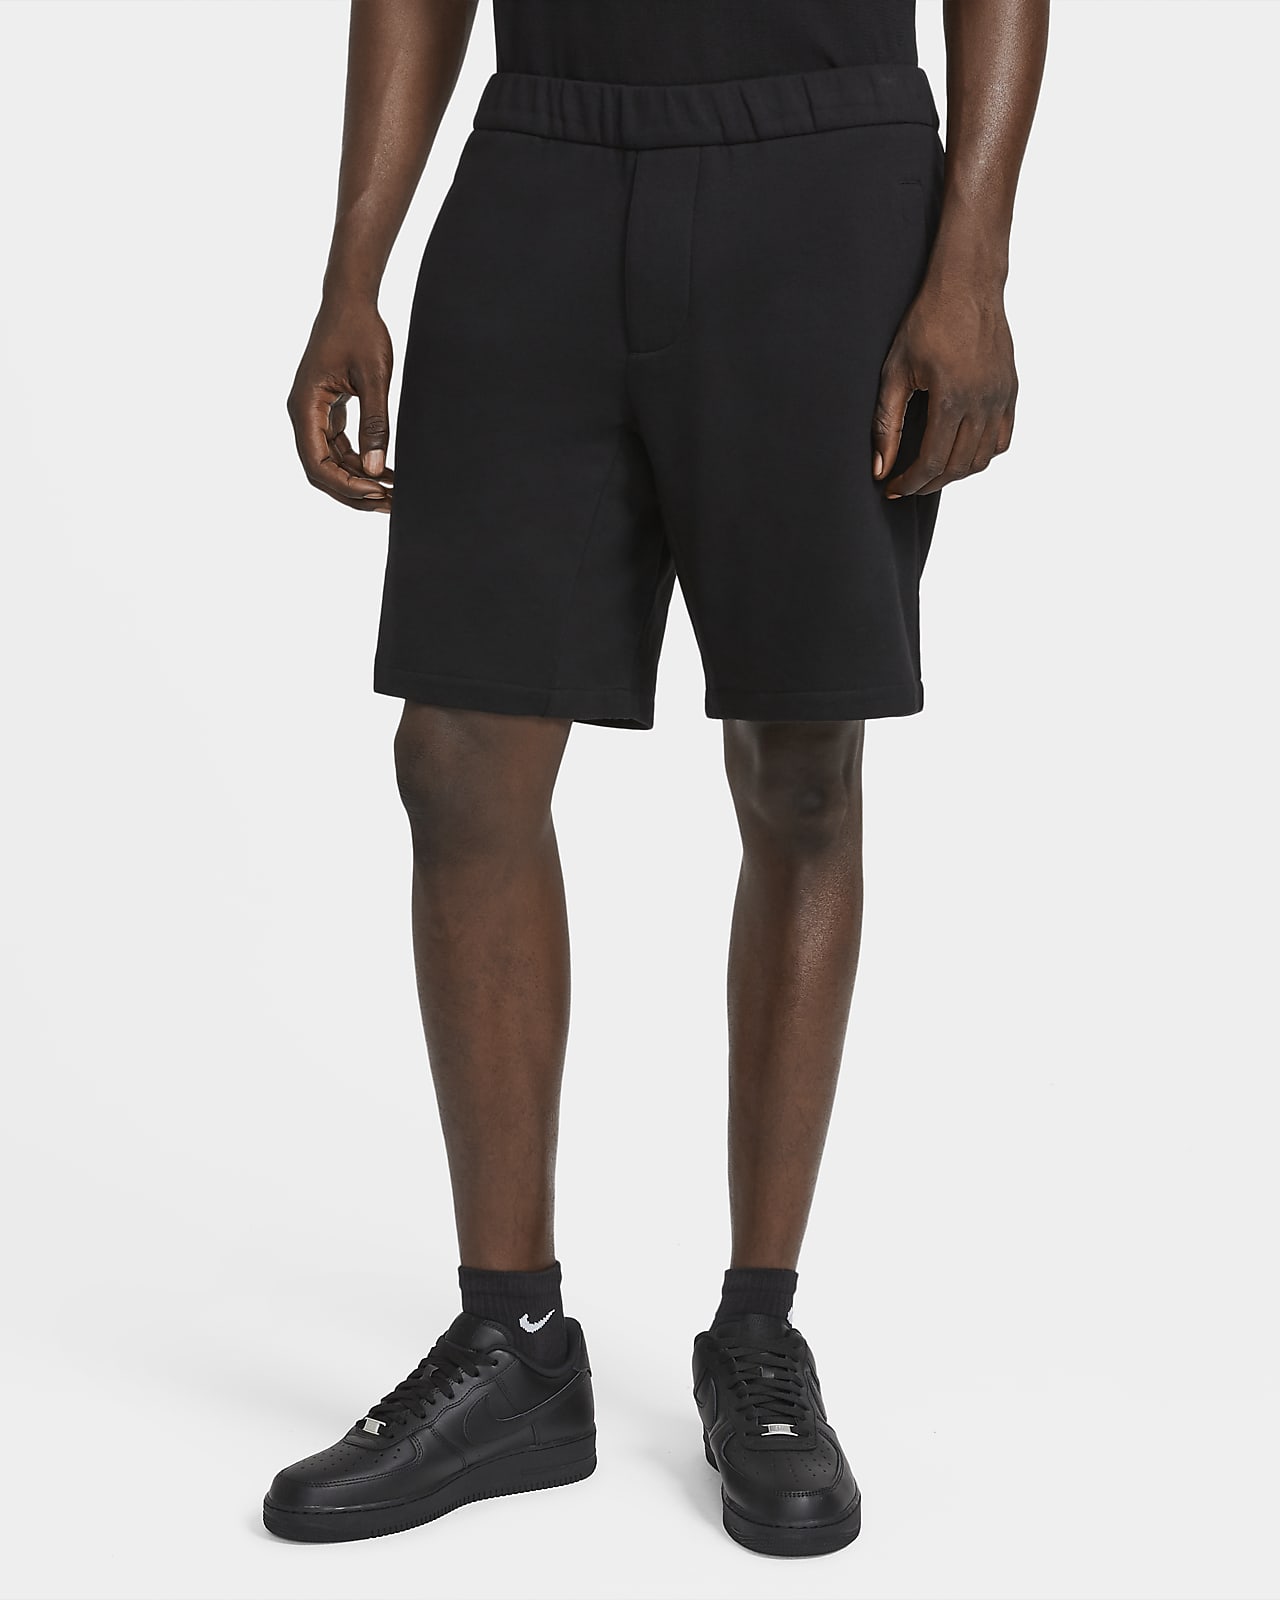 nike jogger shorts for men